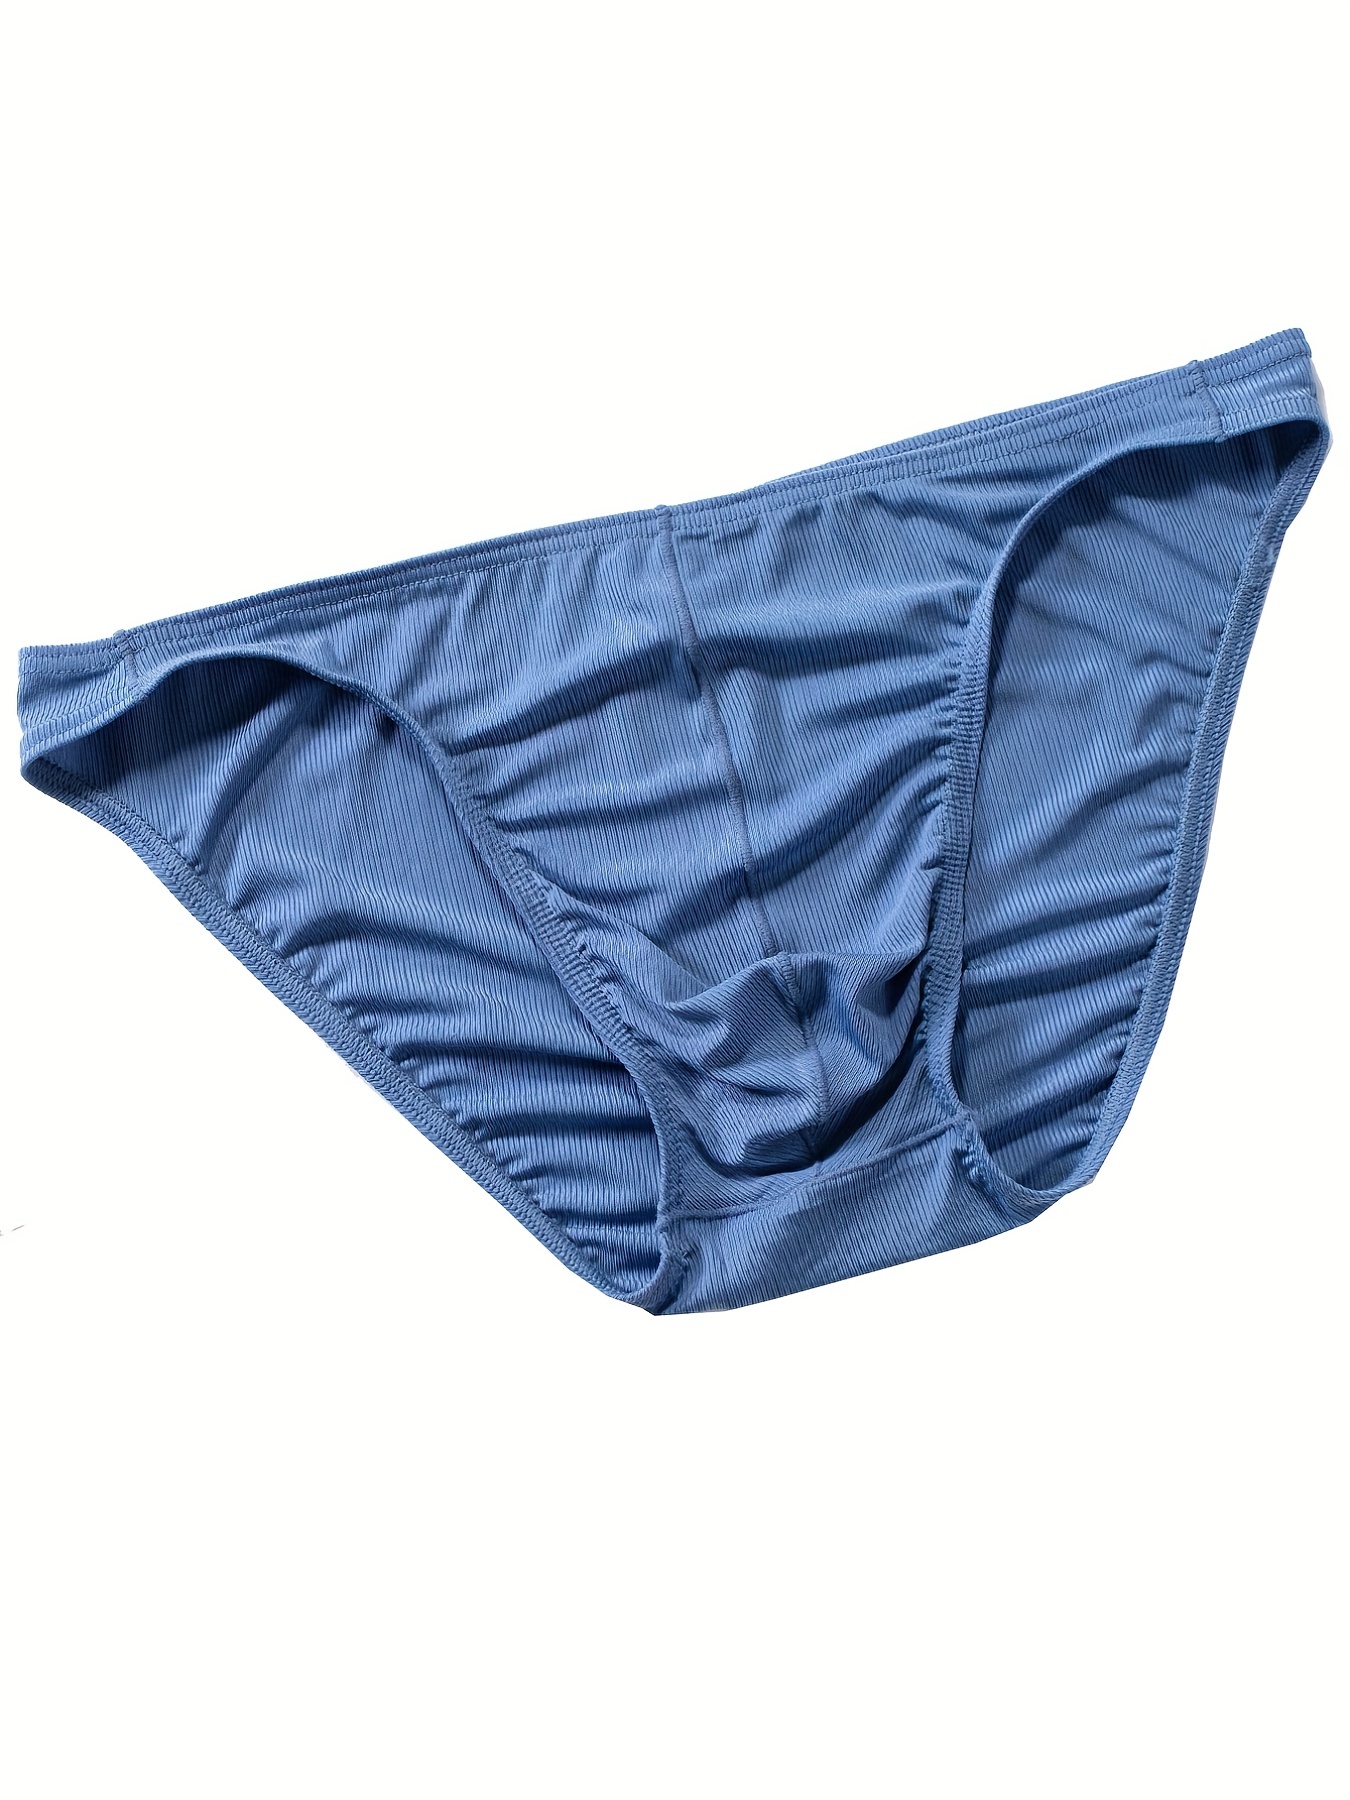 French Cut Underwear - Temu Canada